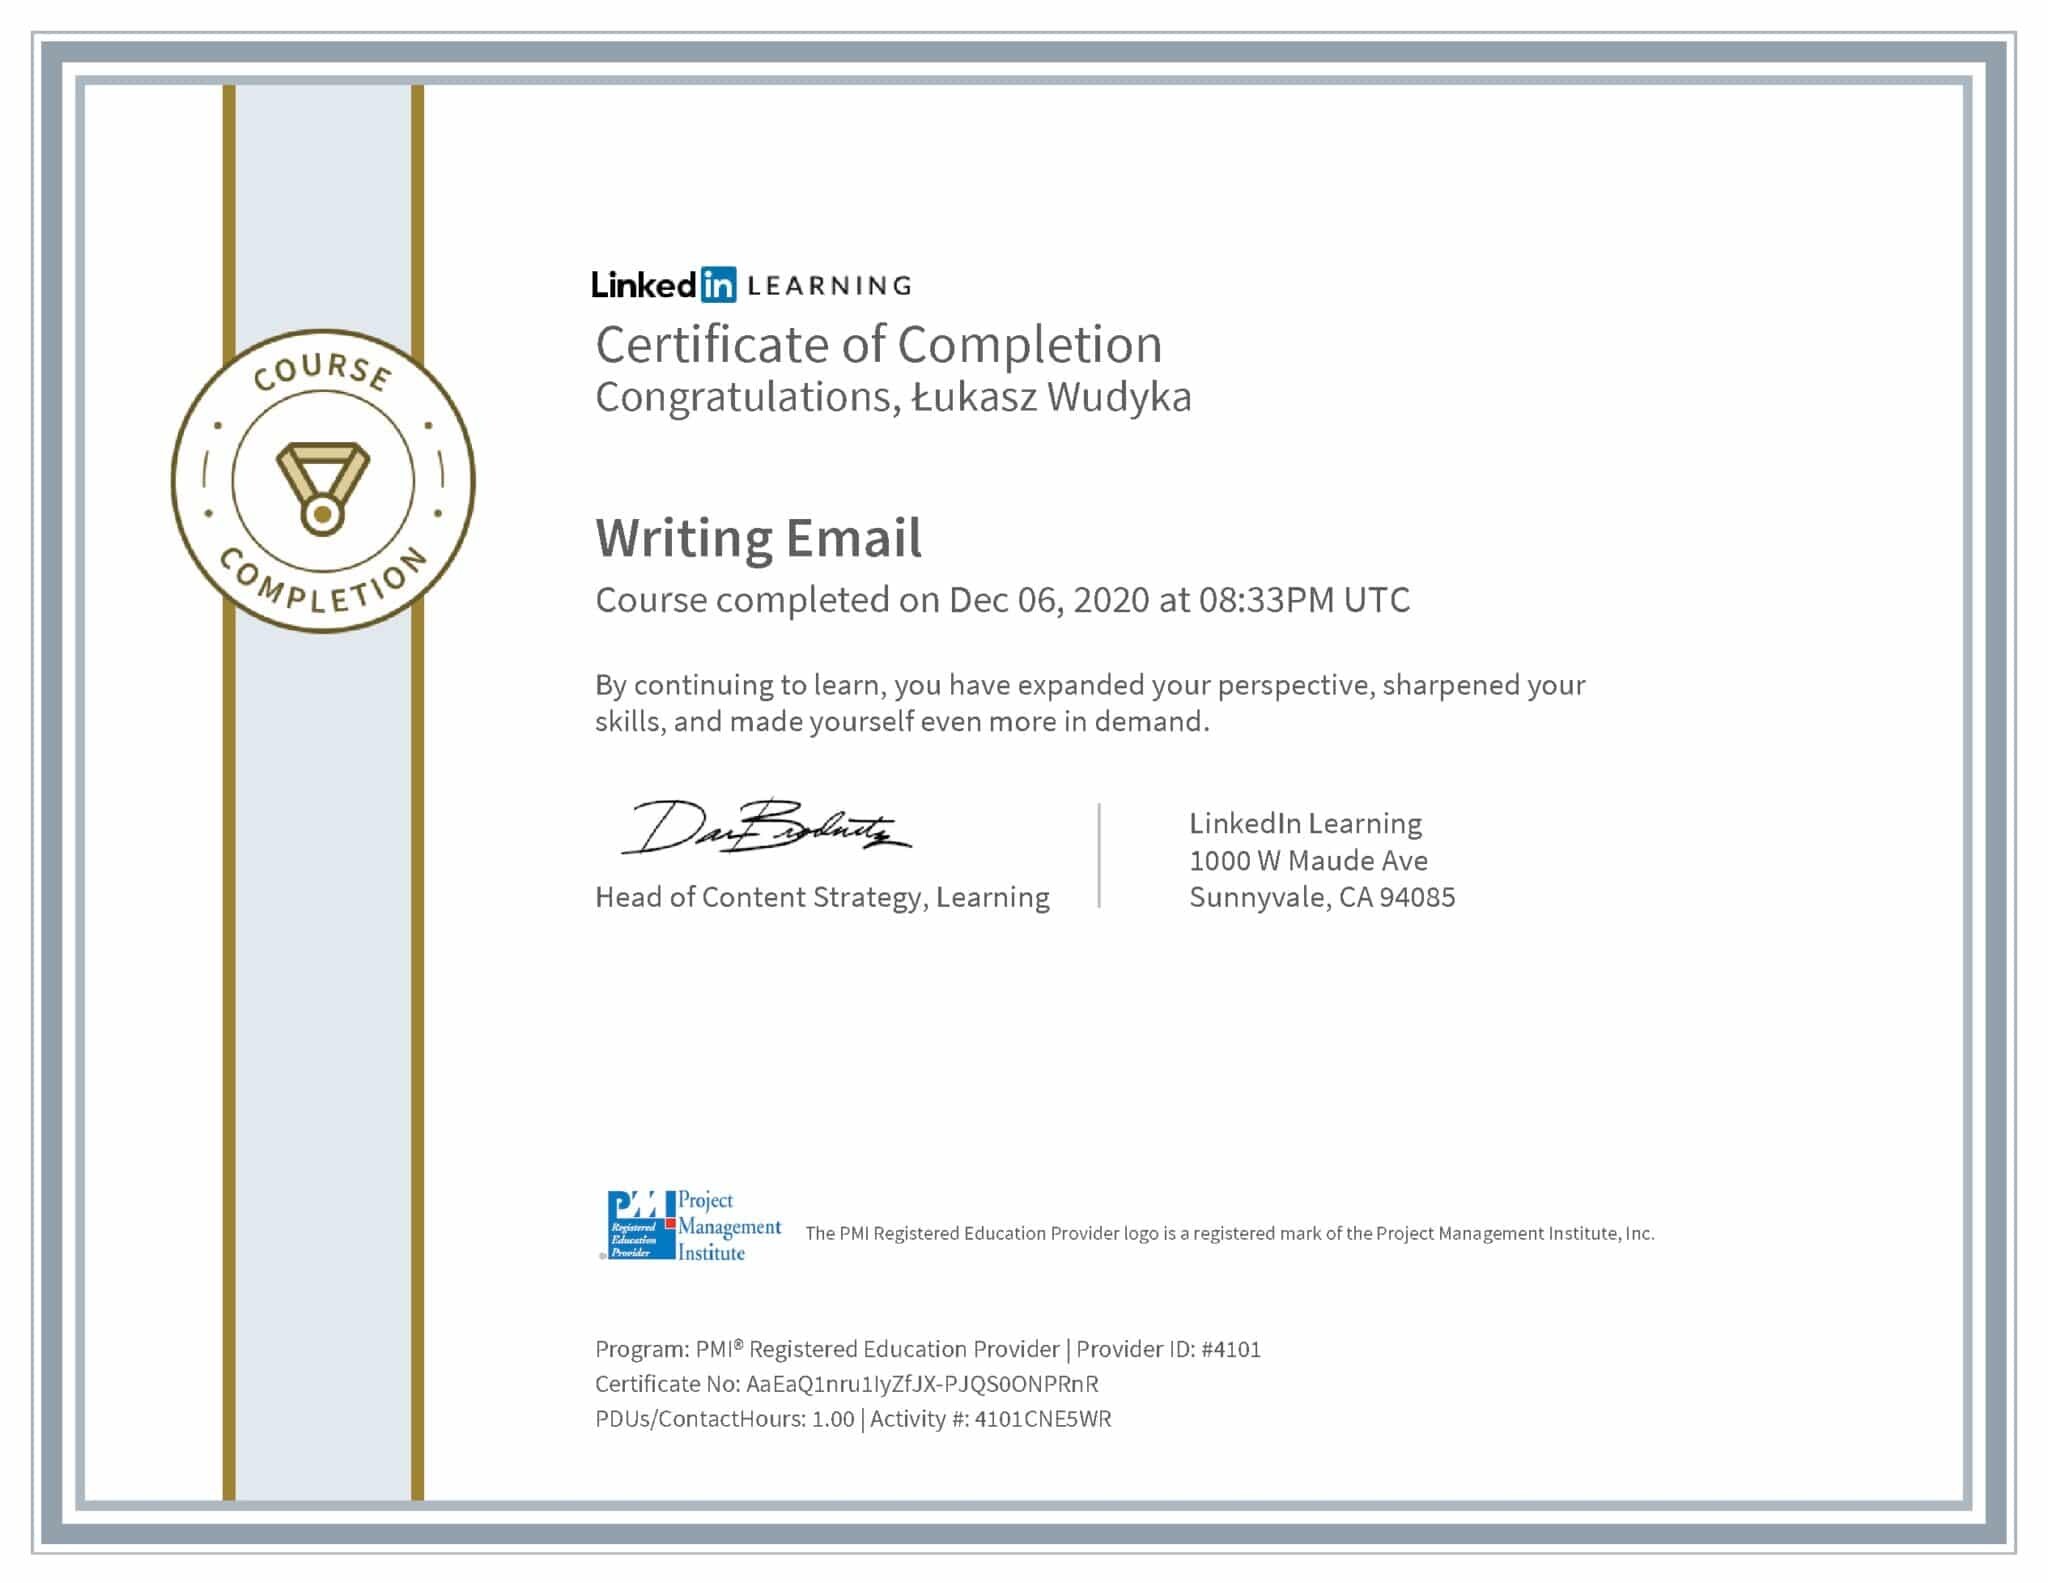 Łukasz Wudyka certyfikat LinkedIn Writing Email PMI